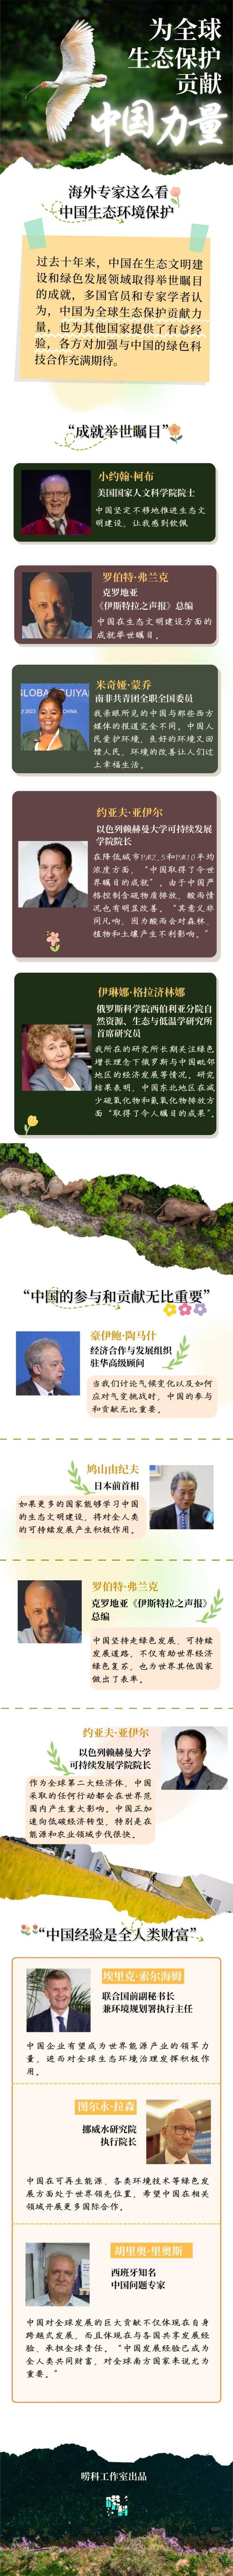 唠科｜海外专家这么看中国生态保护